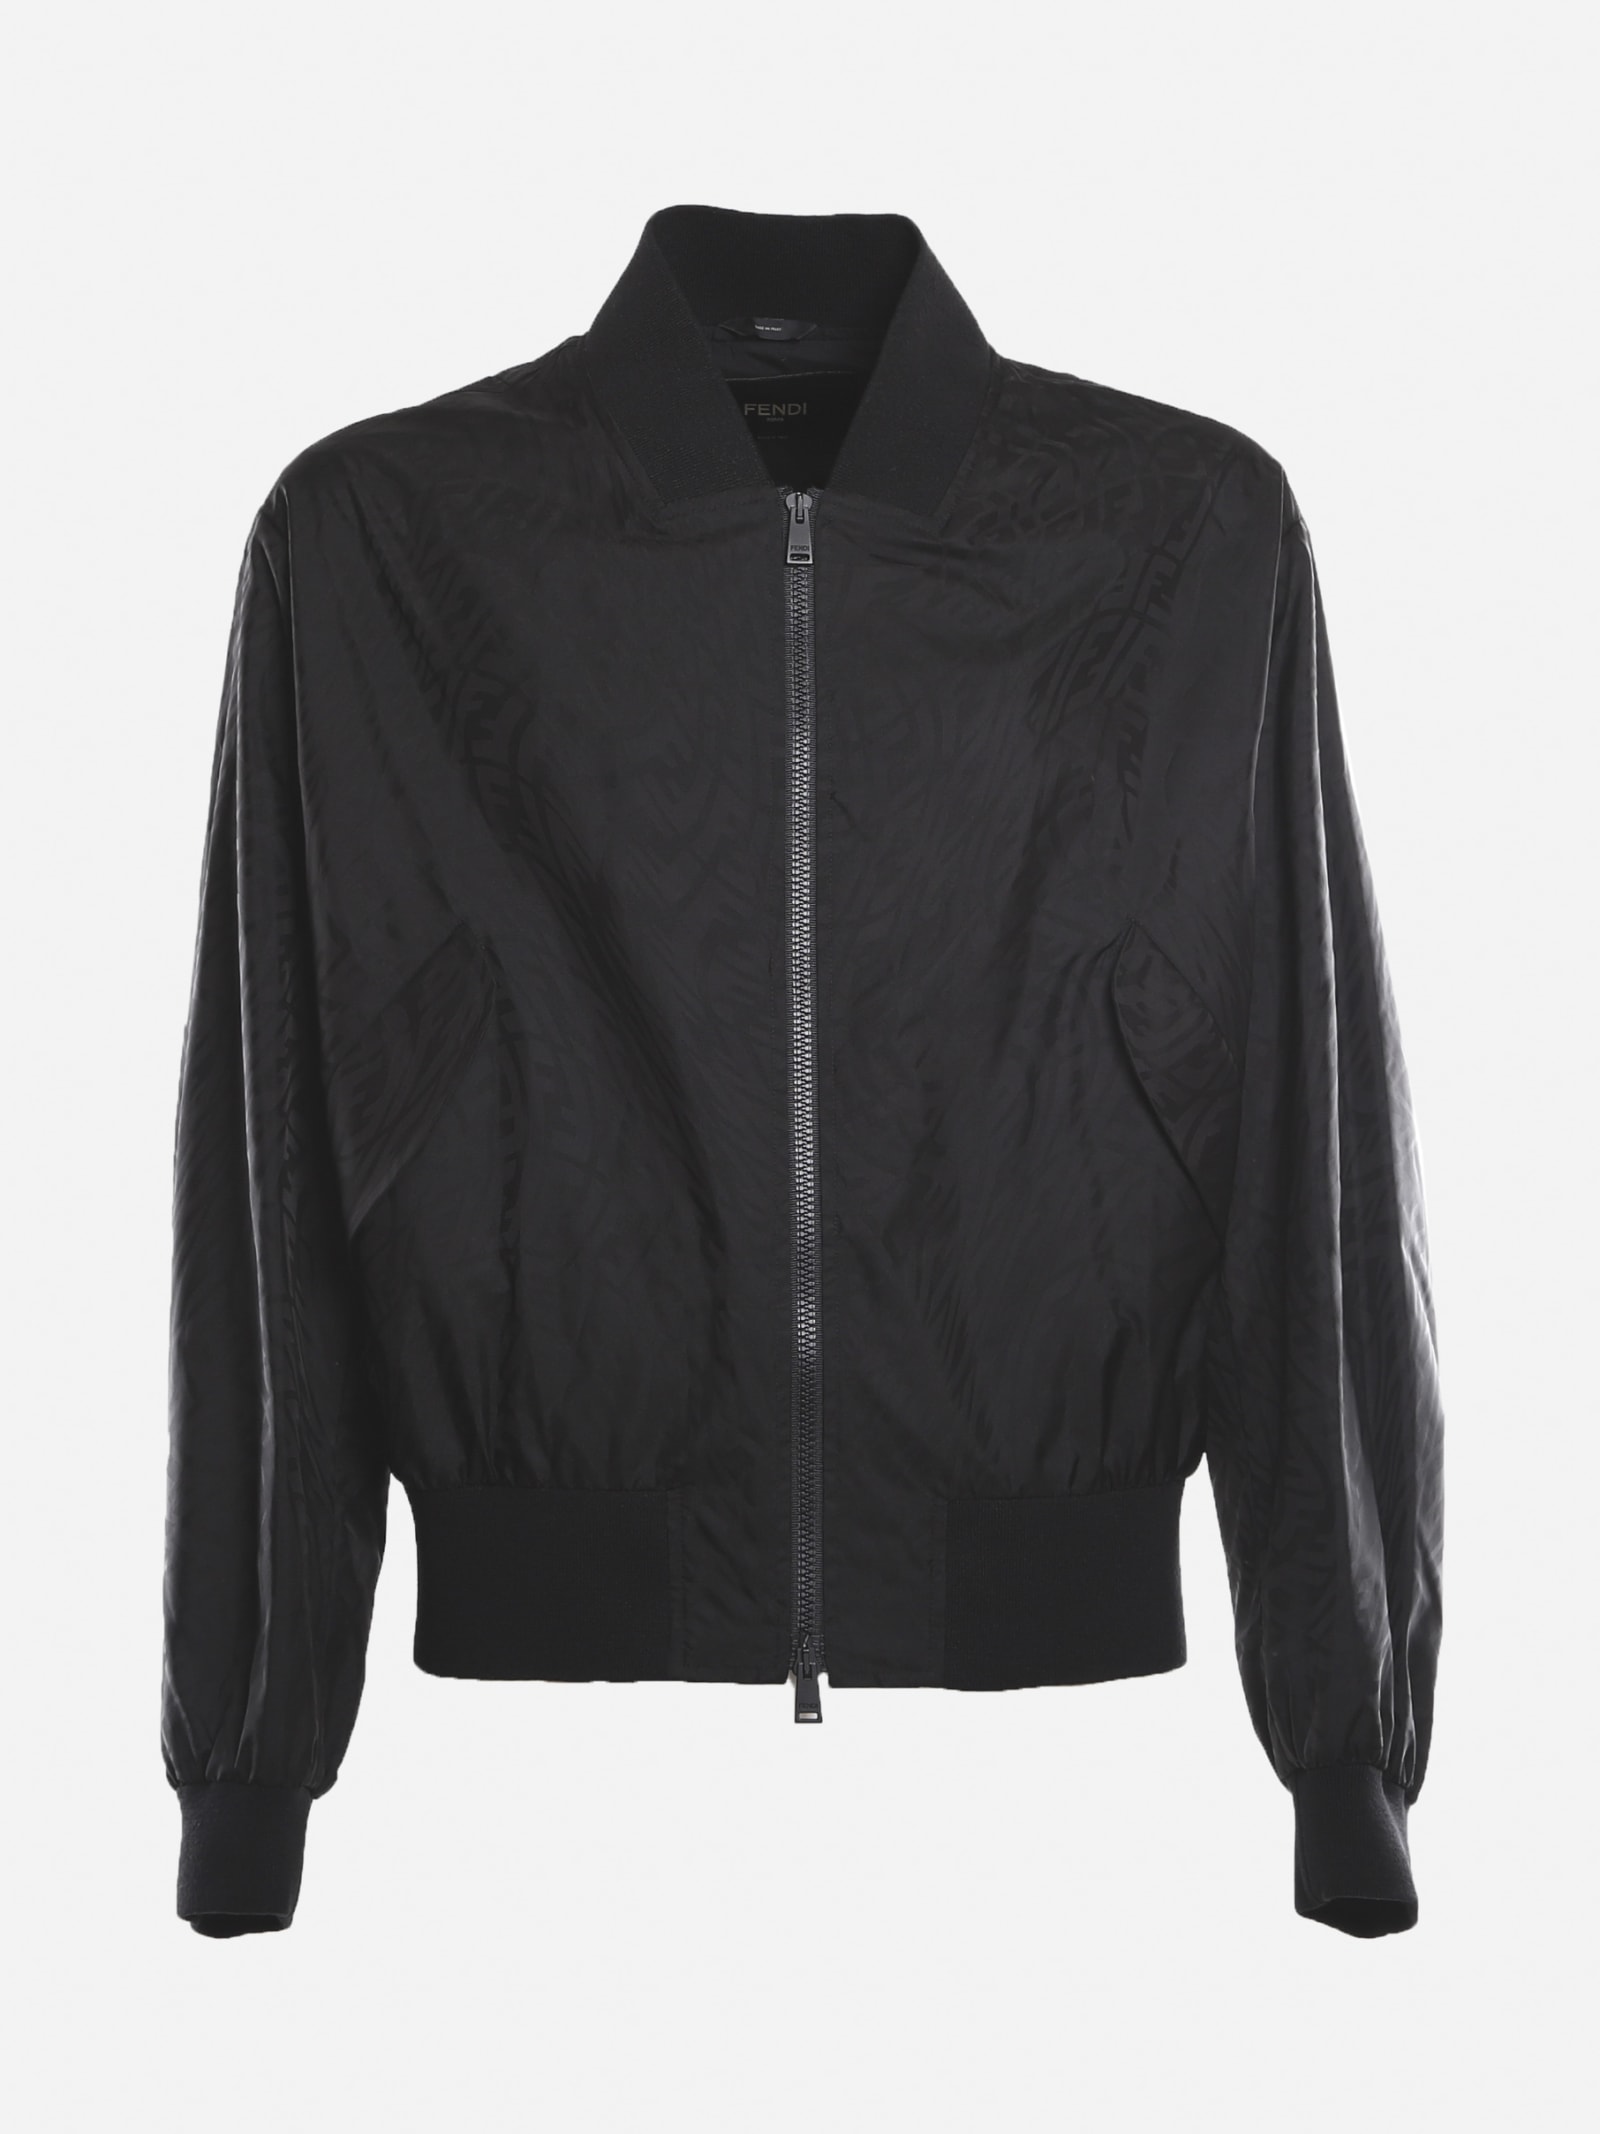 Fendi Technical Fabric Jacket With All-over Ff Vertigo Motif